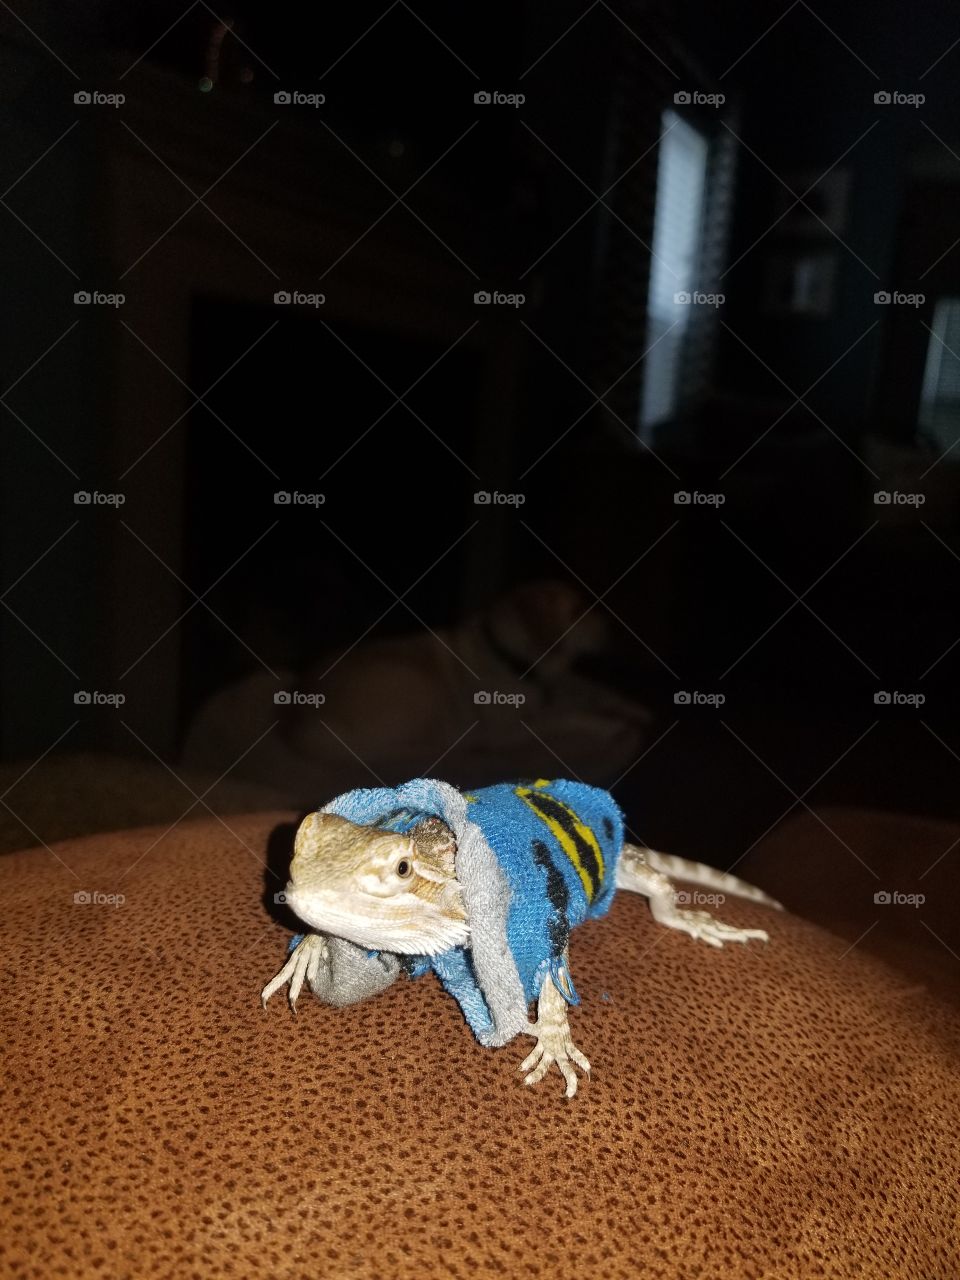 lizard in batman sweater